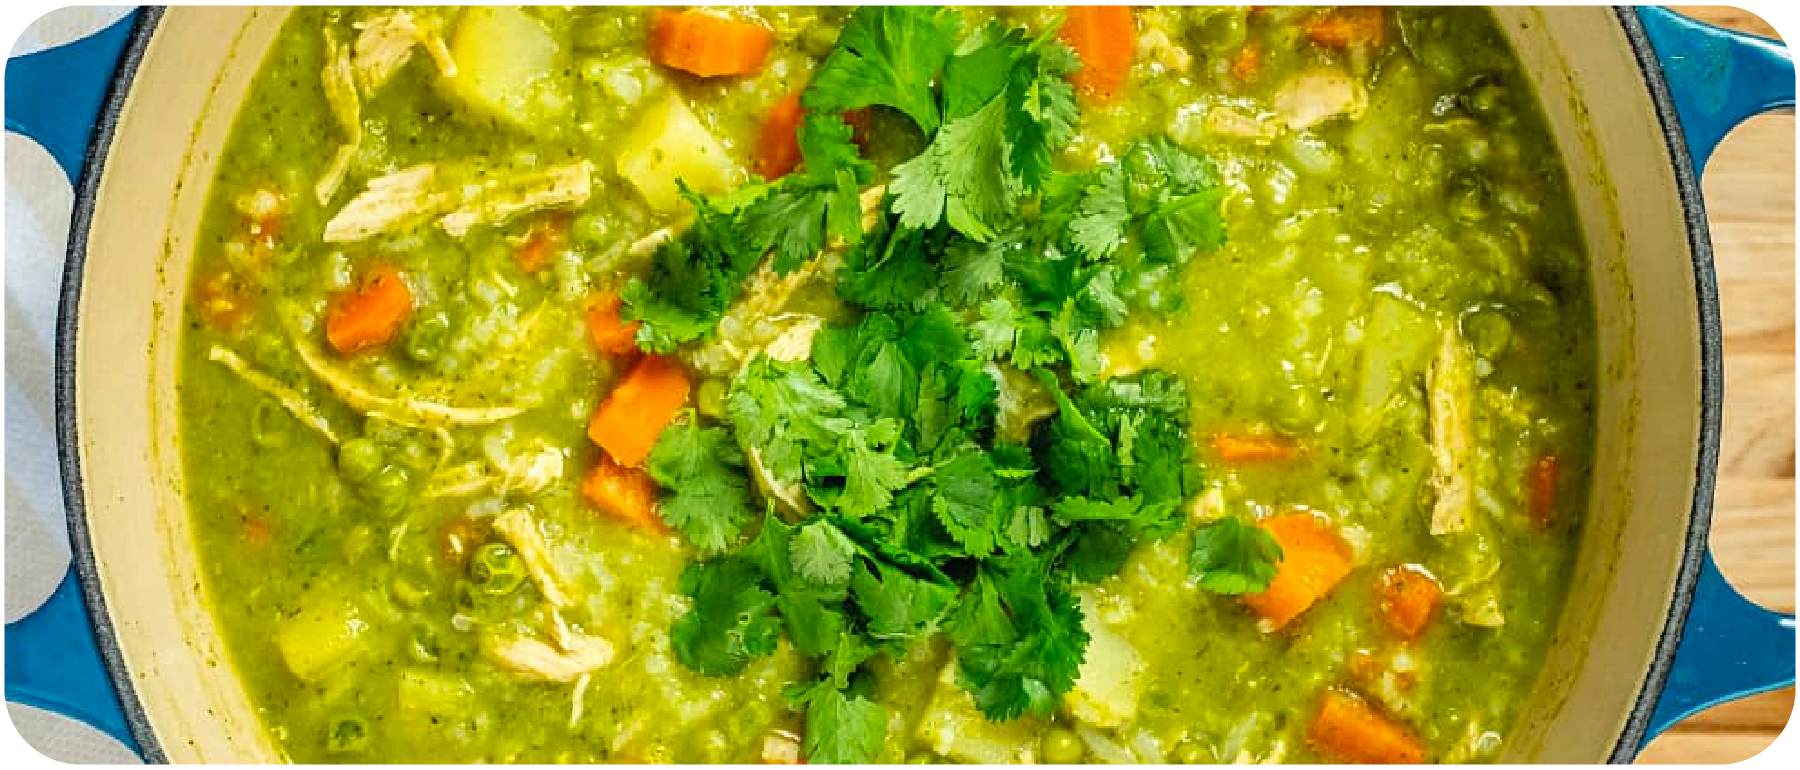 Peruvian Aguadito de pollo Recipe - Peruvian chicken soup